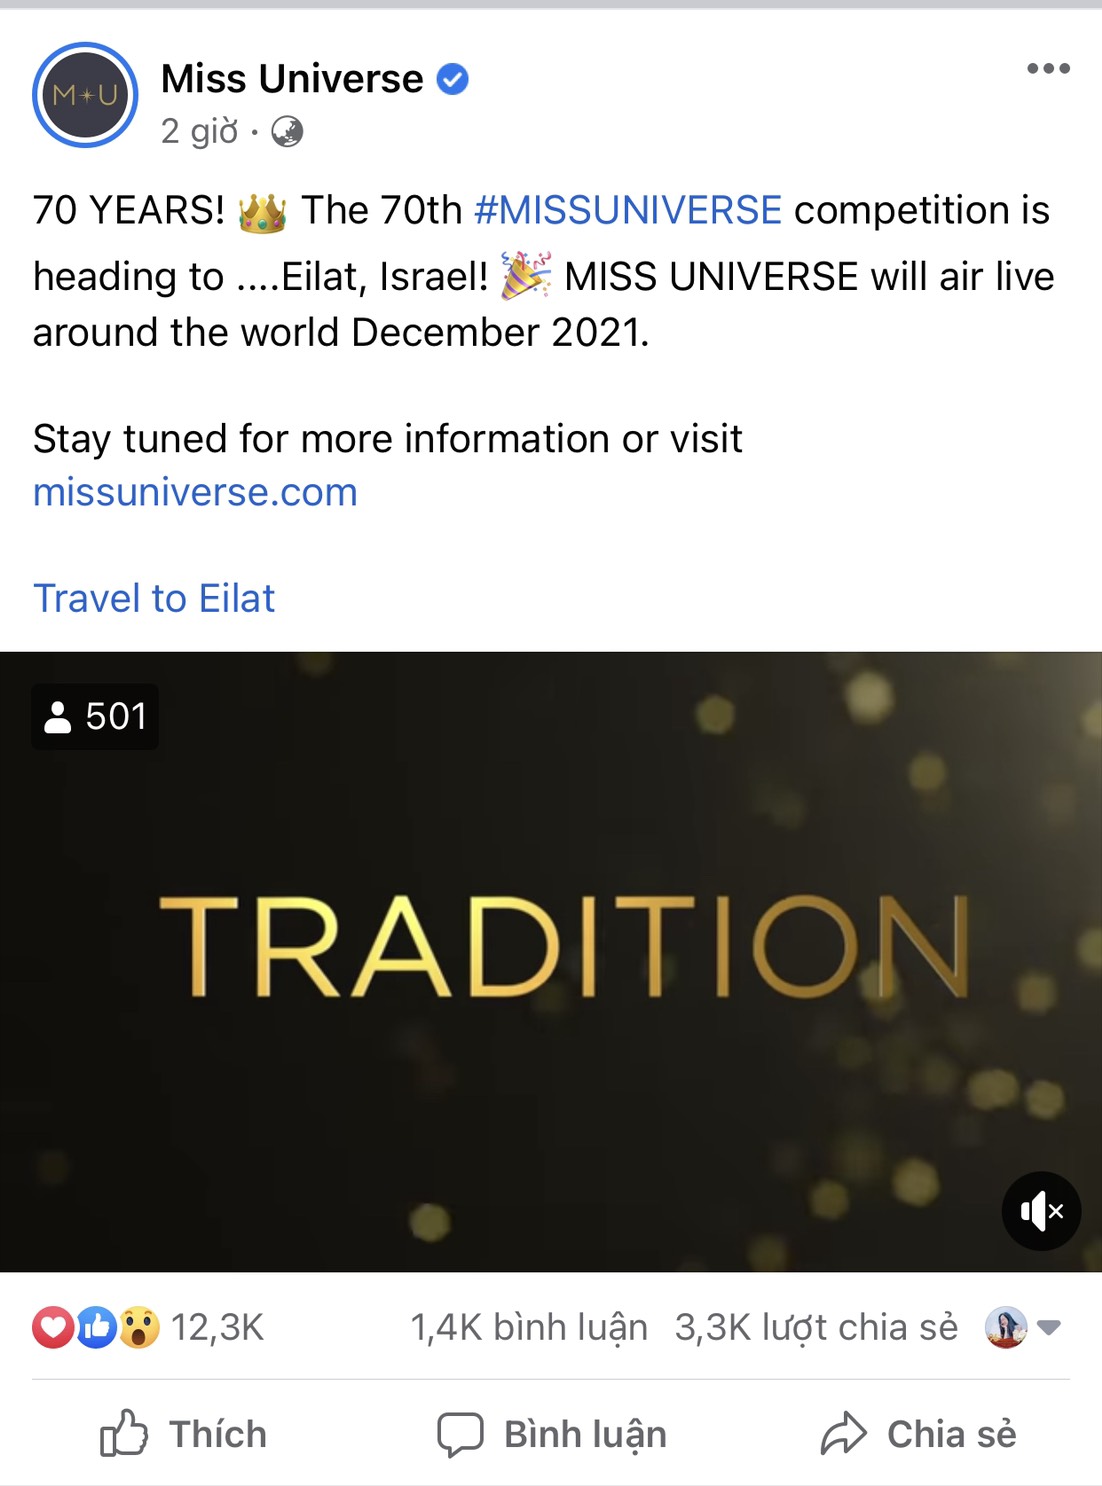 Thông báo mới nhất về thời gian và địa điểm tổ chức cuộc thi được ban tổ chức Miss Universe đăng tải trên trang chủ chính thức